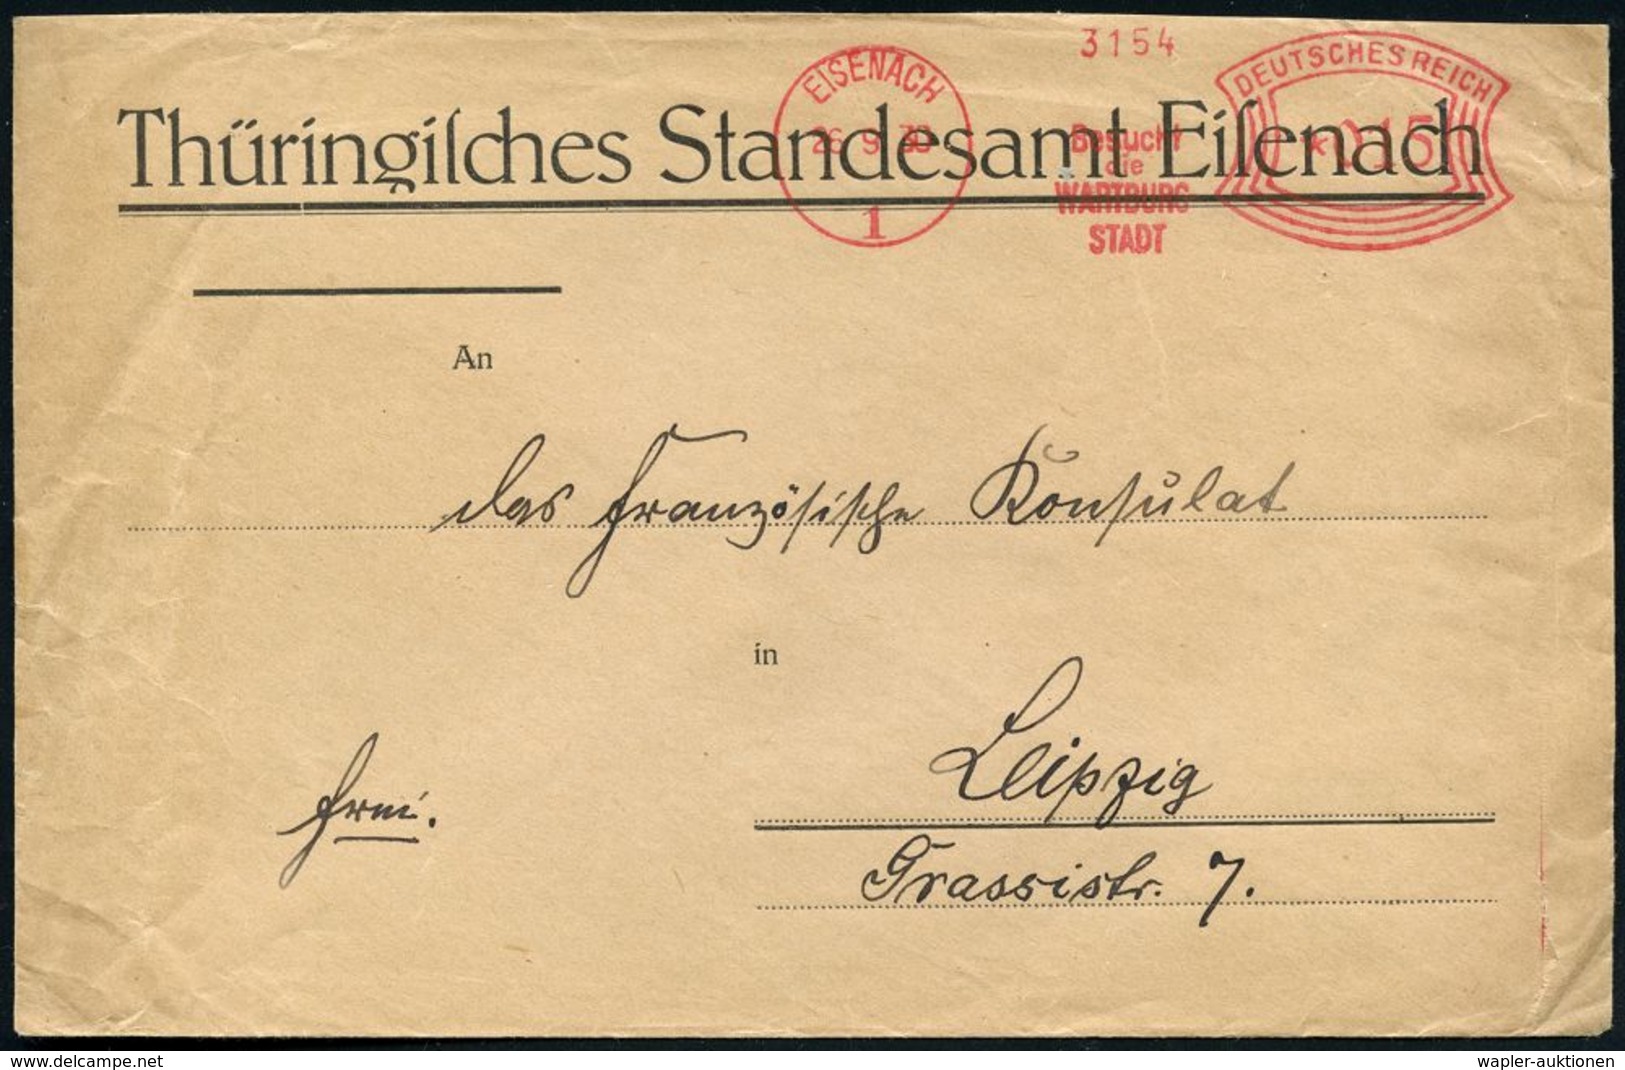 EISENACH/ 1/ Besucht/ Die/ WARTBURG/ STADT 1930 (26.9.) Seltener AFS Auf Kommunal-Bf.: Thüring. Standesamt Eisenach, Rs. - Cristianesimo